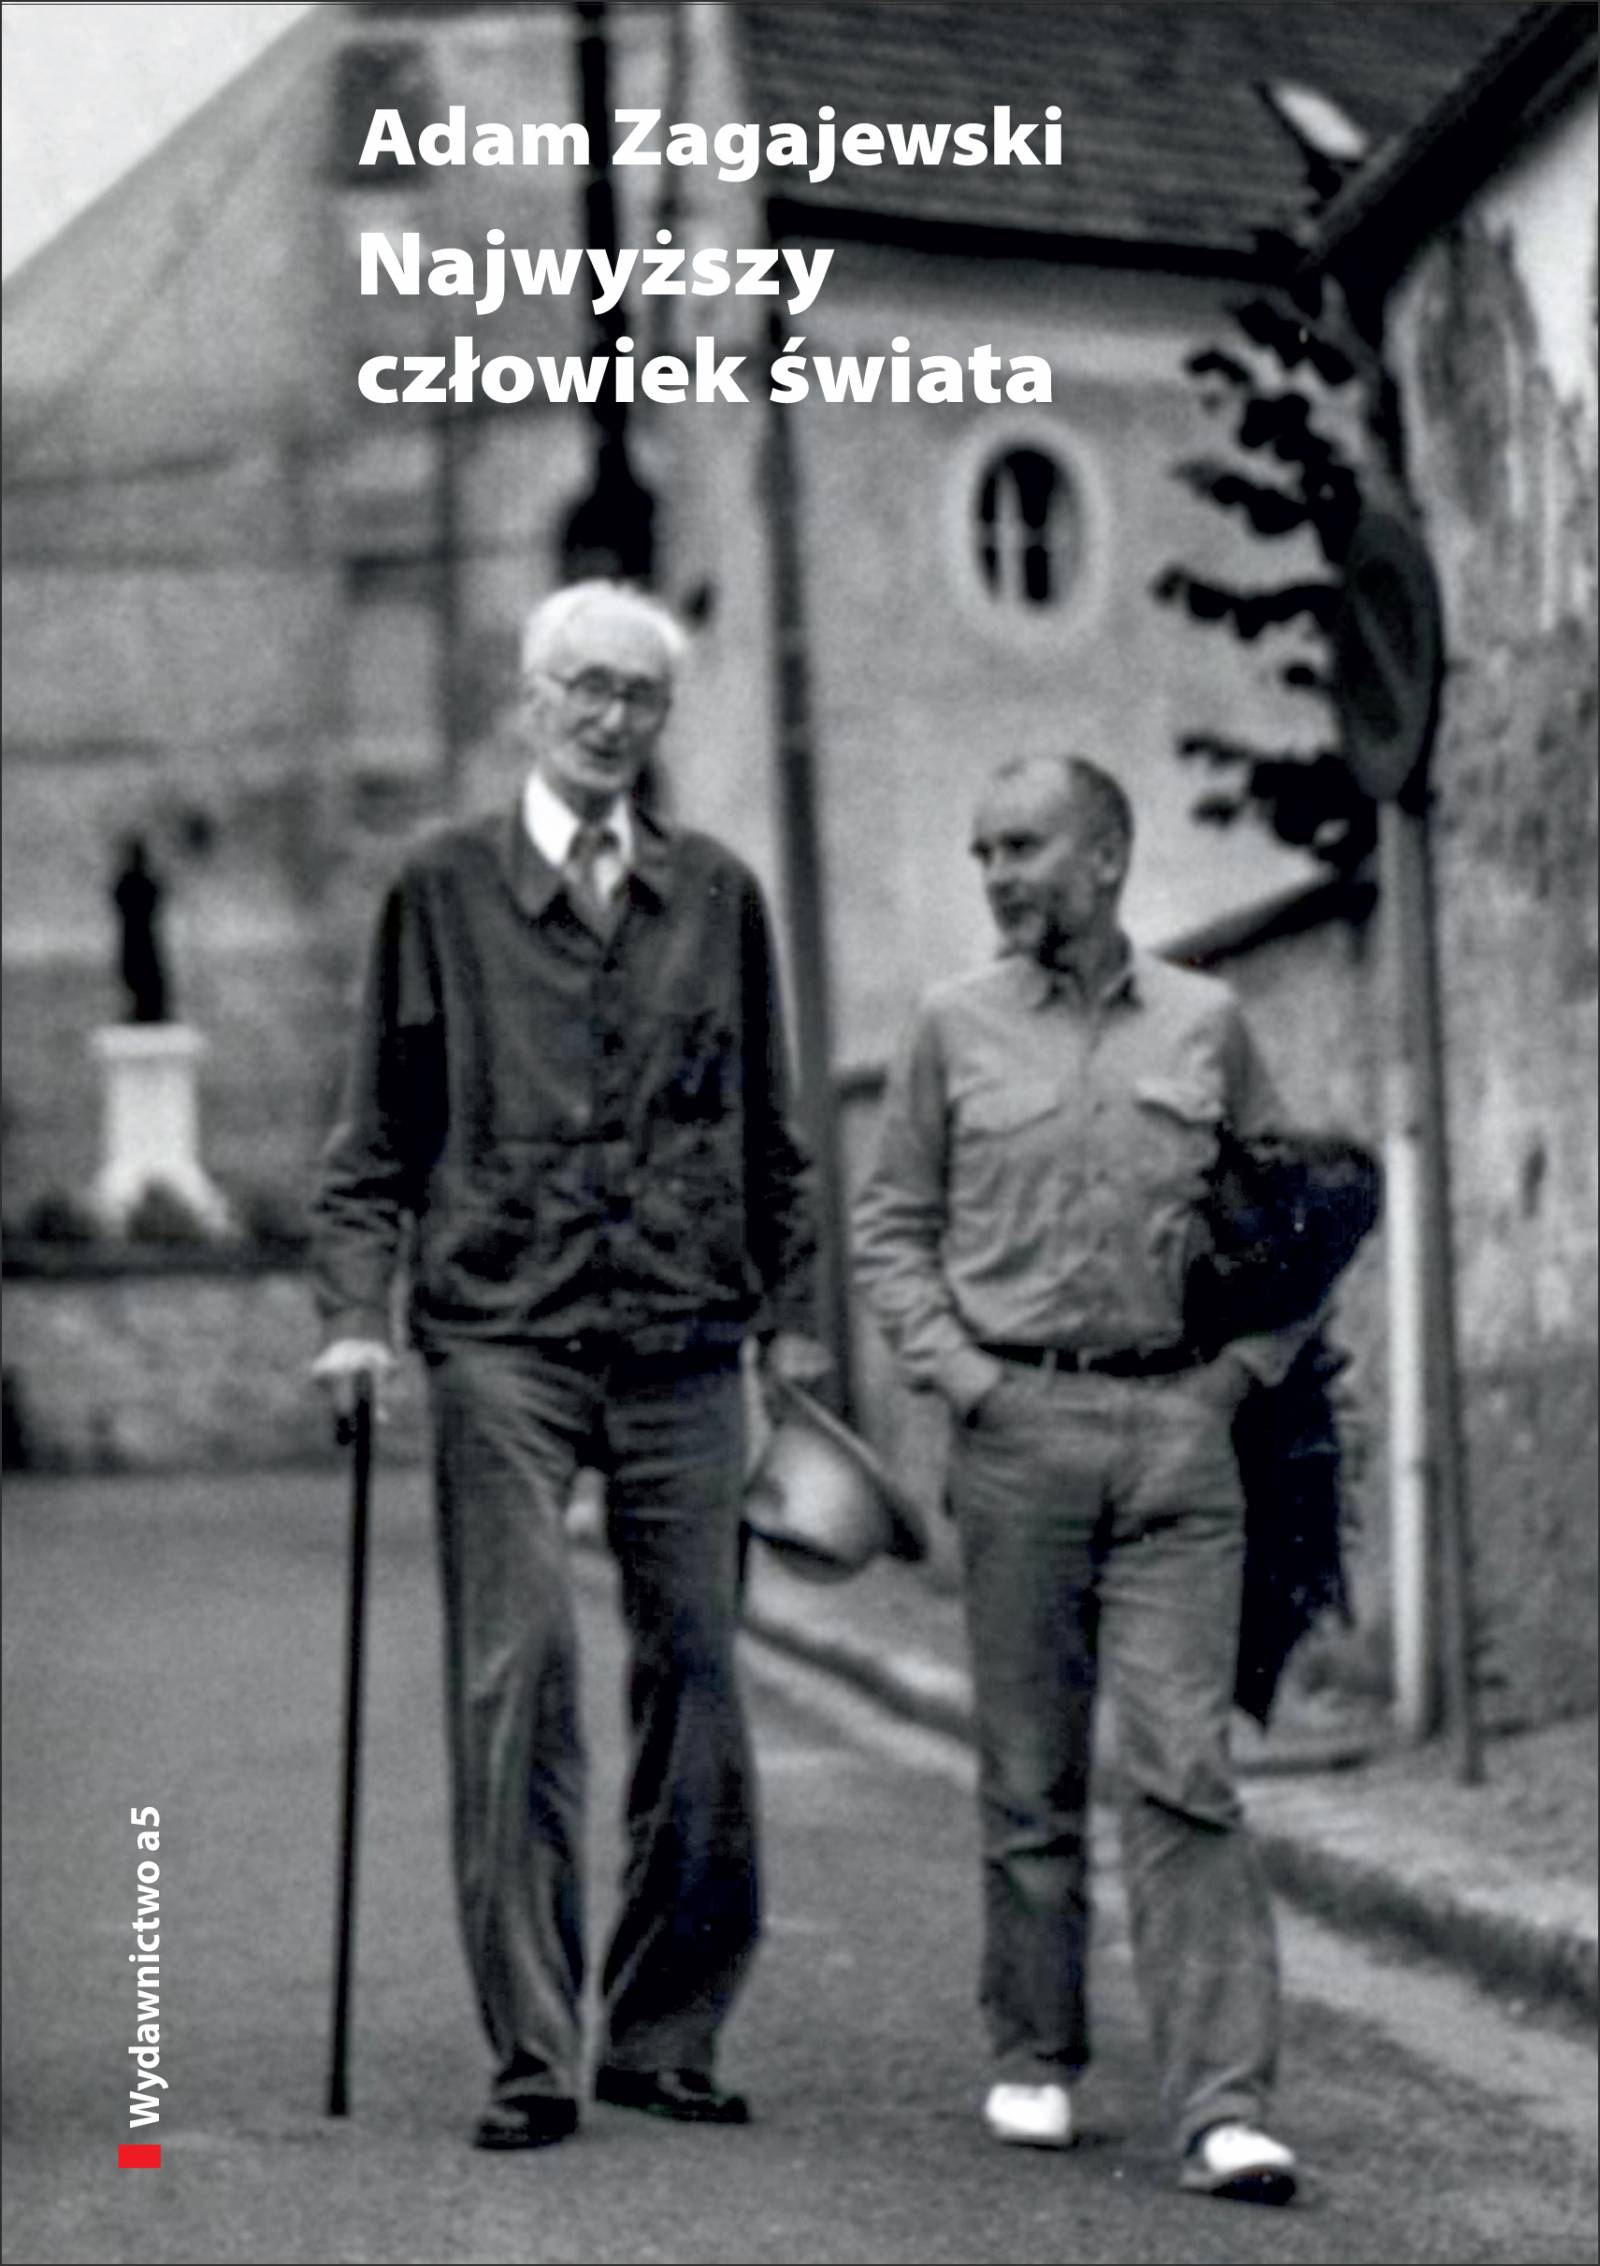 Adam Zagajewski, „Najwyższy człowiek świata”, Wydawnictwo a5 / Fot. Materiały prasowe